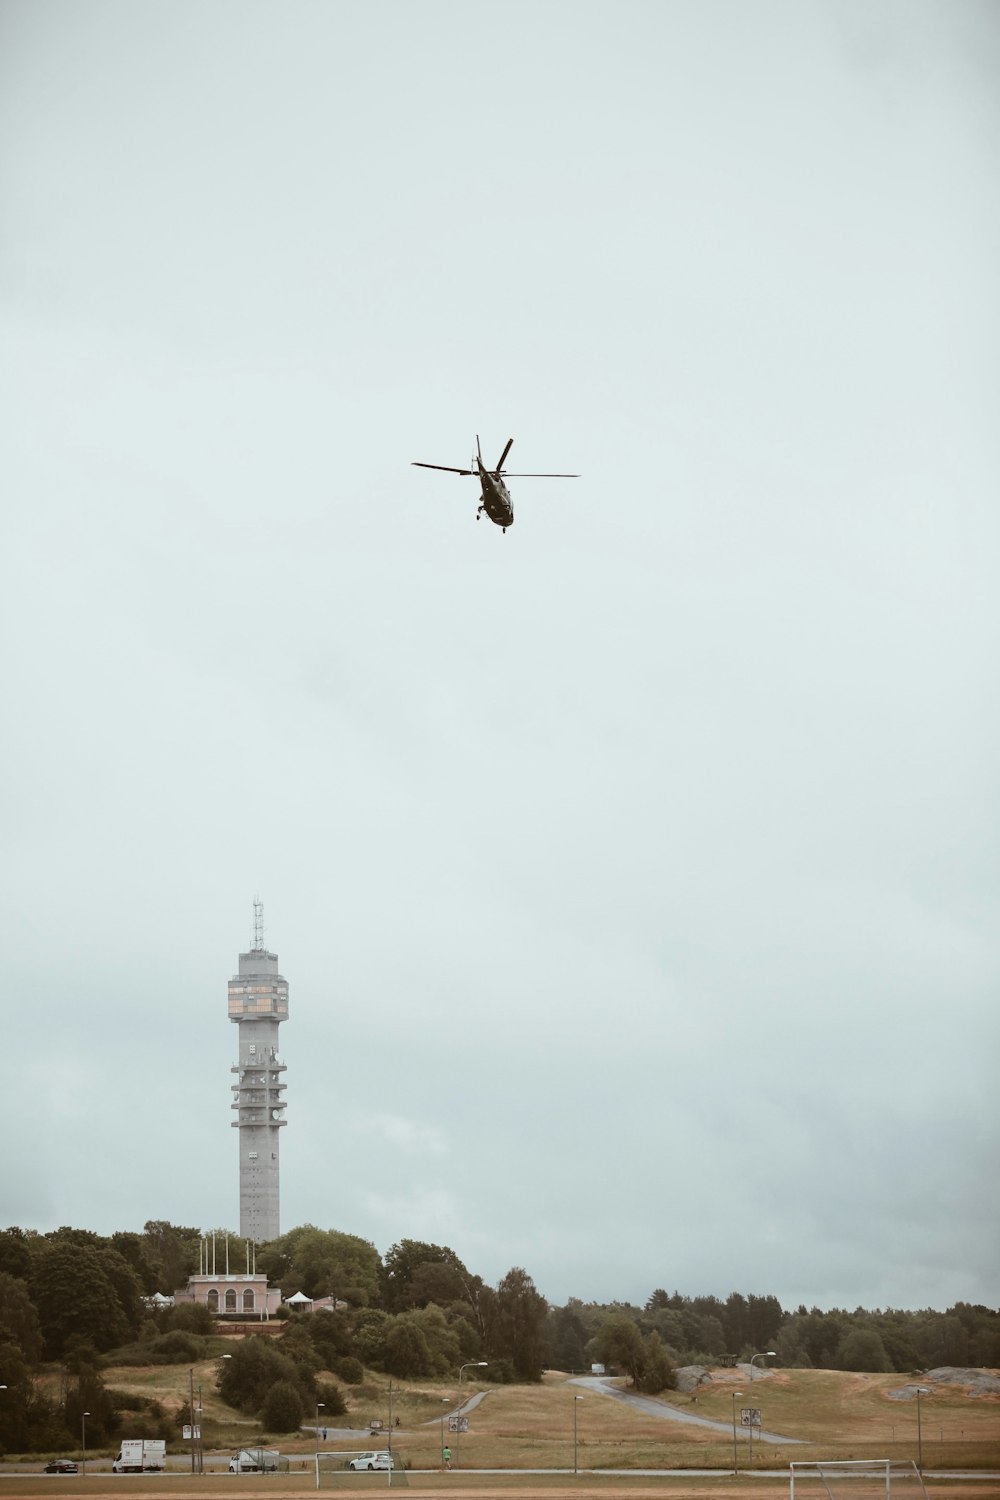 fotografia ad angolo basso dell'elicottero nero sopra la torre di cemento grigio durante il giorno